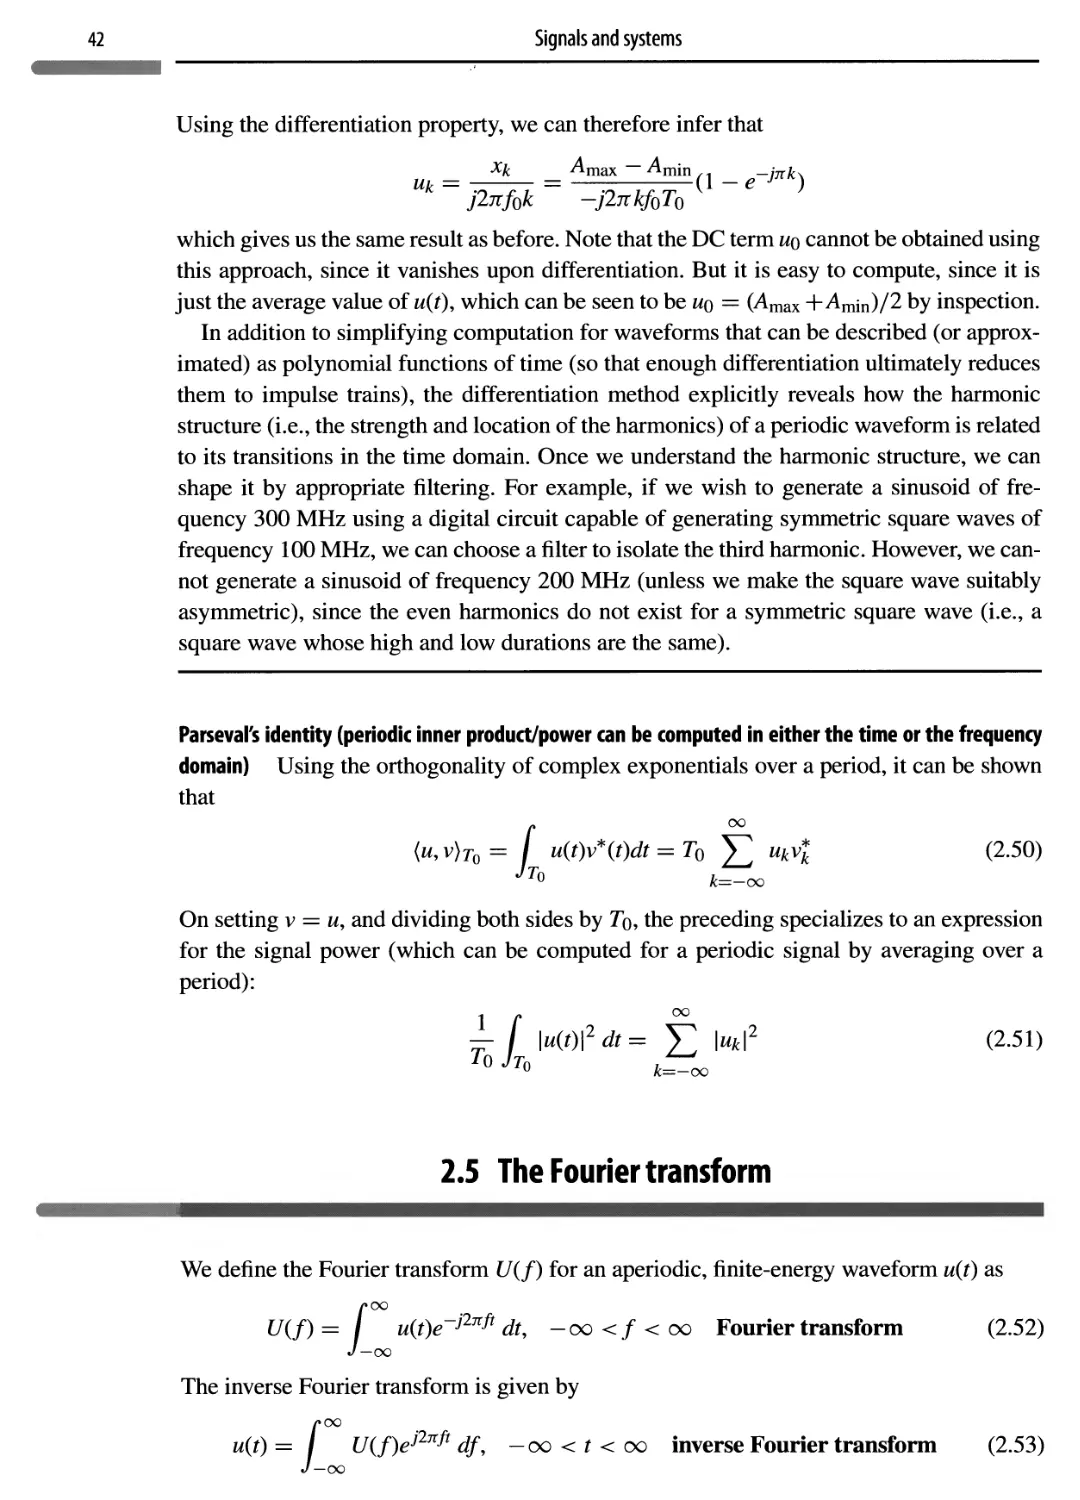 2.5 The Fourier transform 42